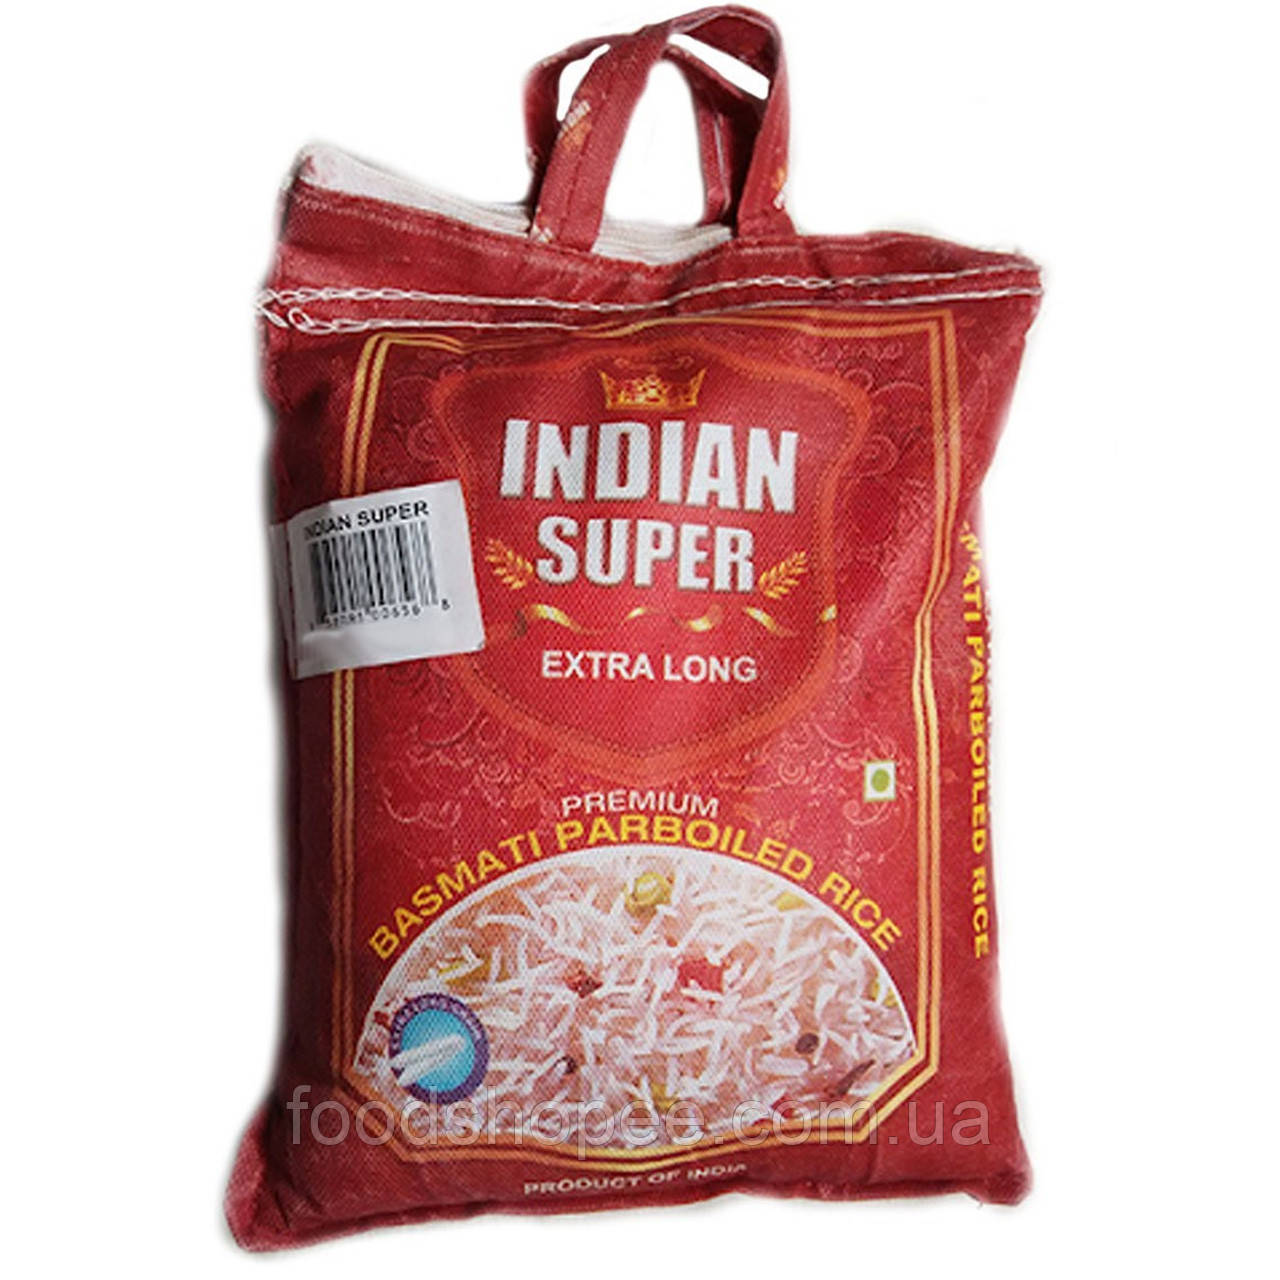 Рис басмати, Indian Super, пропаренный, 5 кг